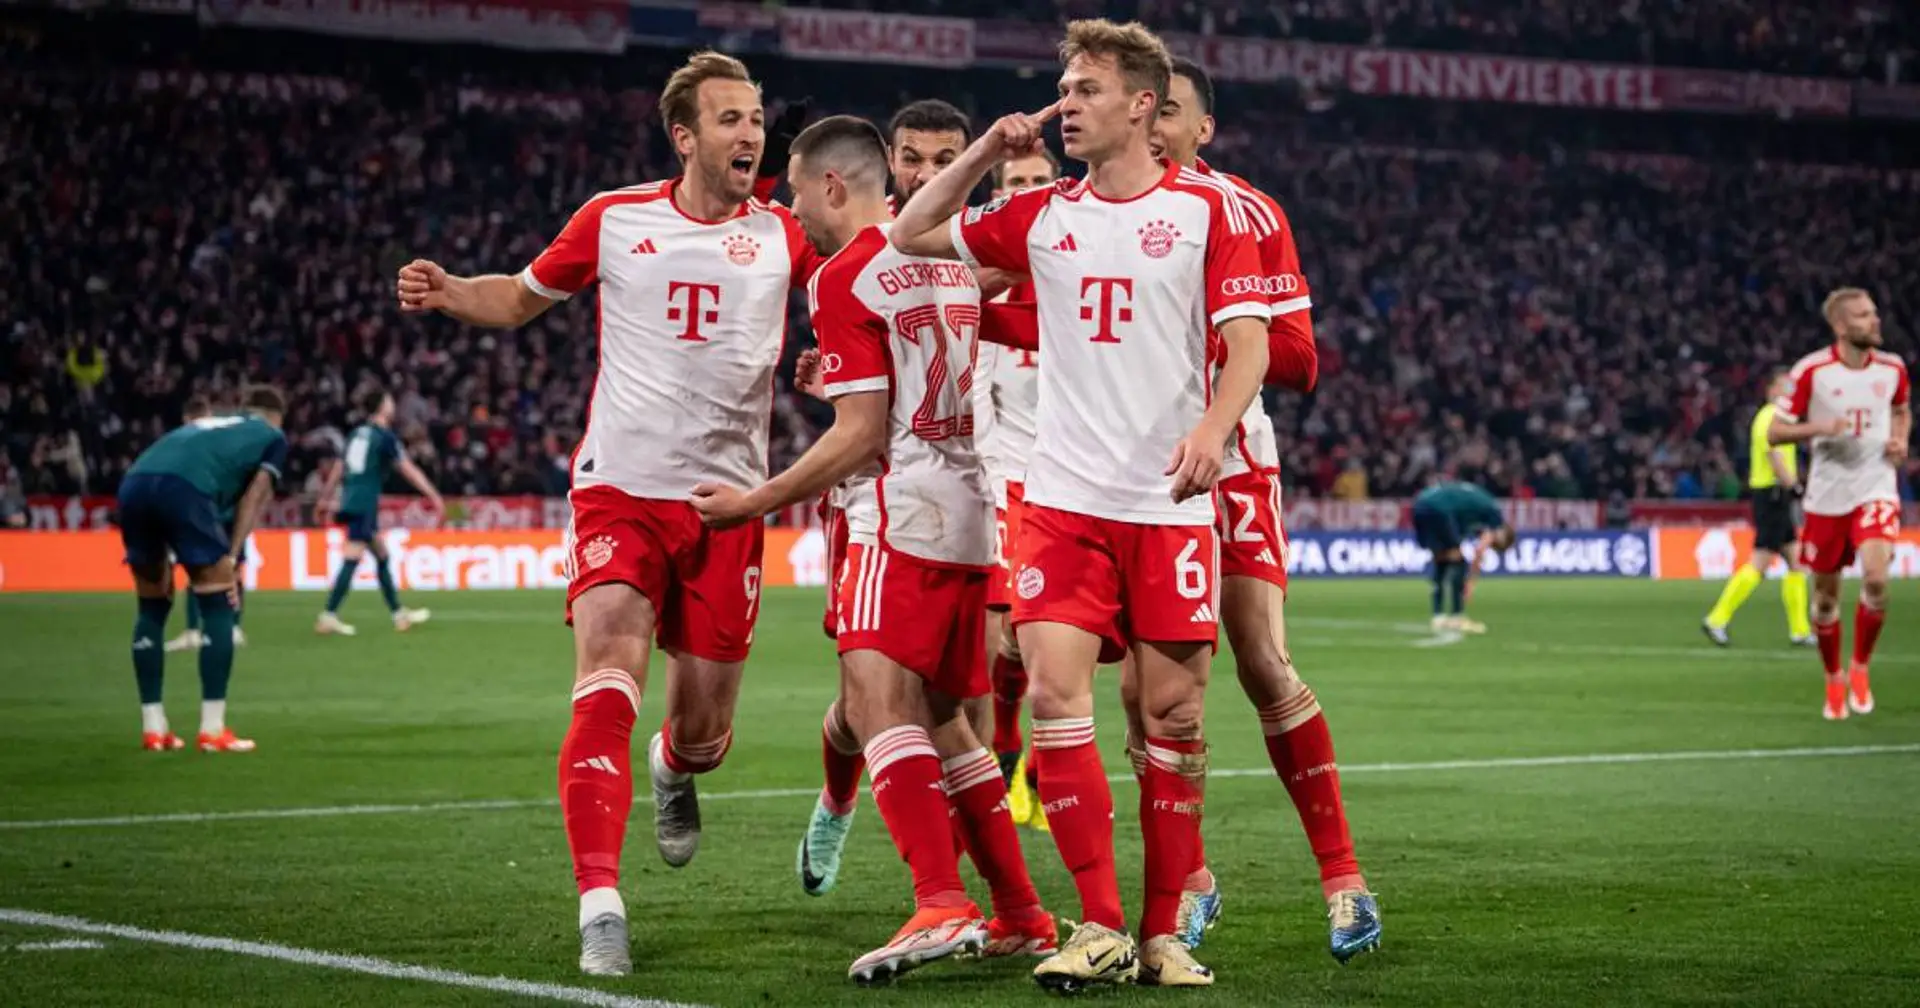 Bayern steht im UCL-Halbfinale! 1:0-Heimsieg gegen Arsenal in 3 Kernpunkten